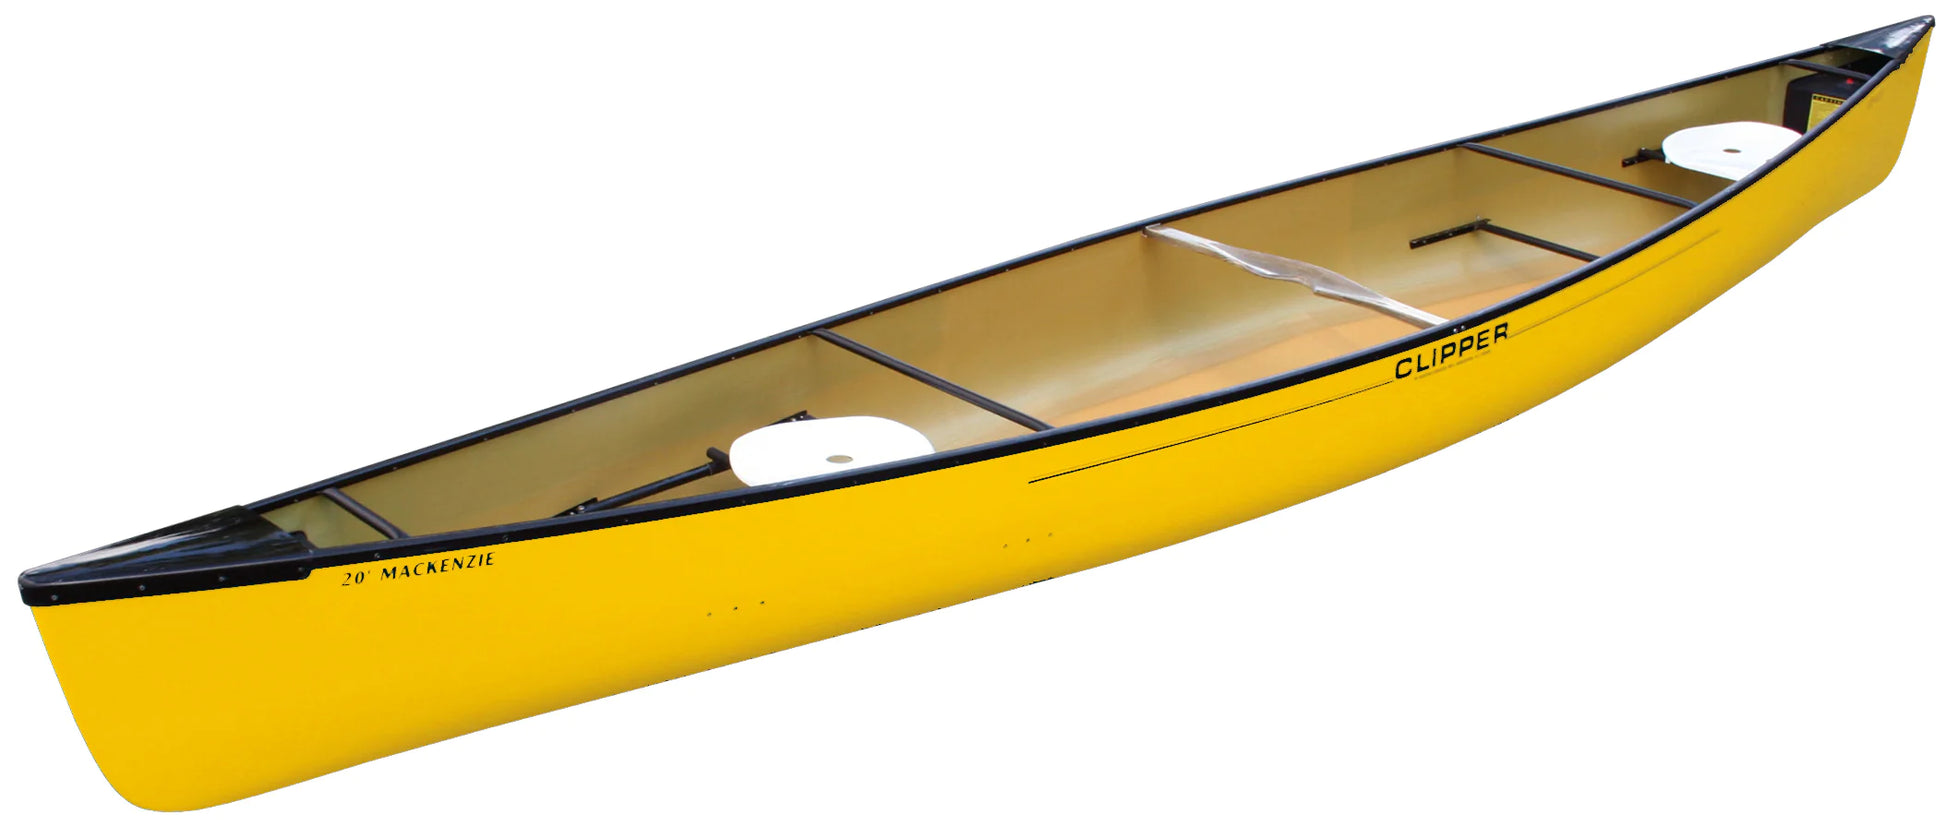 Clipper Canoe MacKenzie 20 ft Kevlar